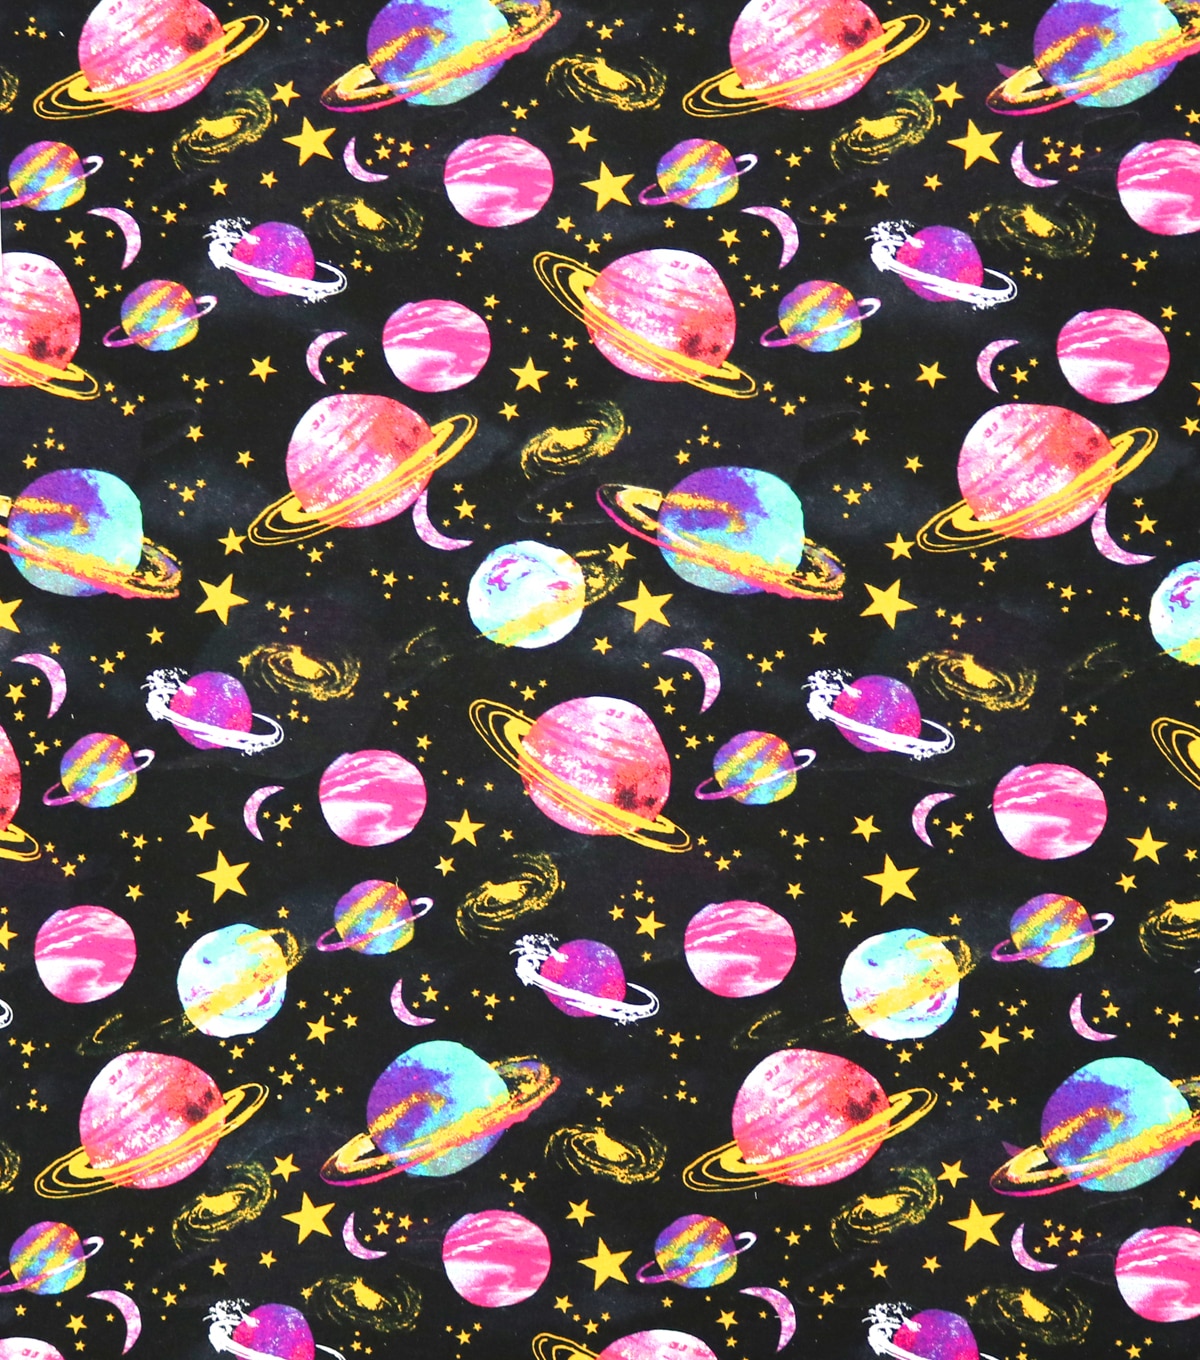 Super Snuggle Flannel Fabric-Watercolor Space | JOANN